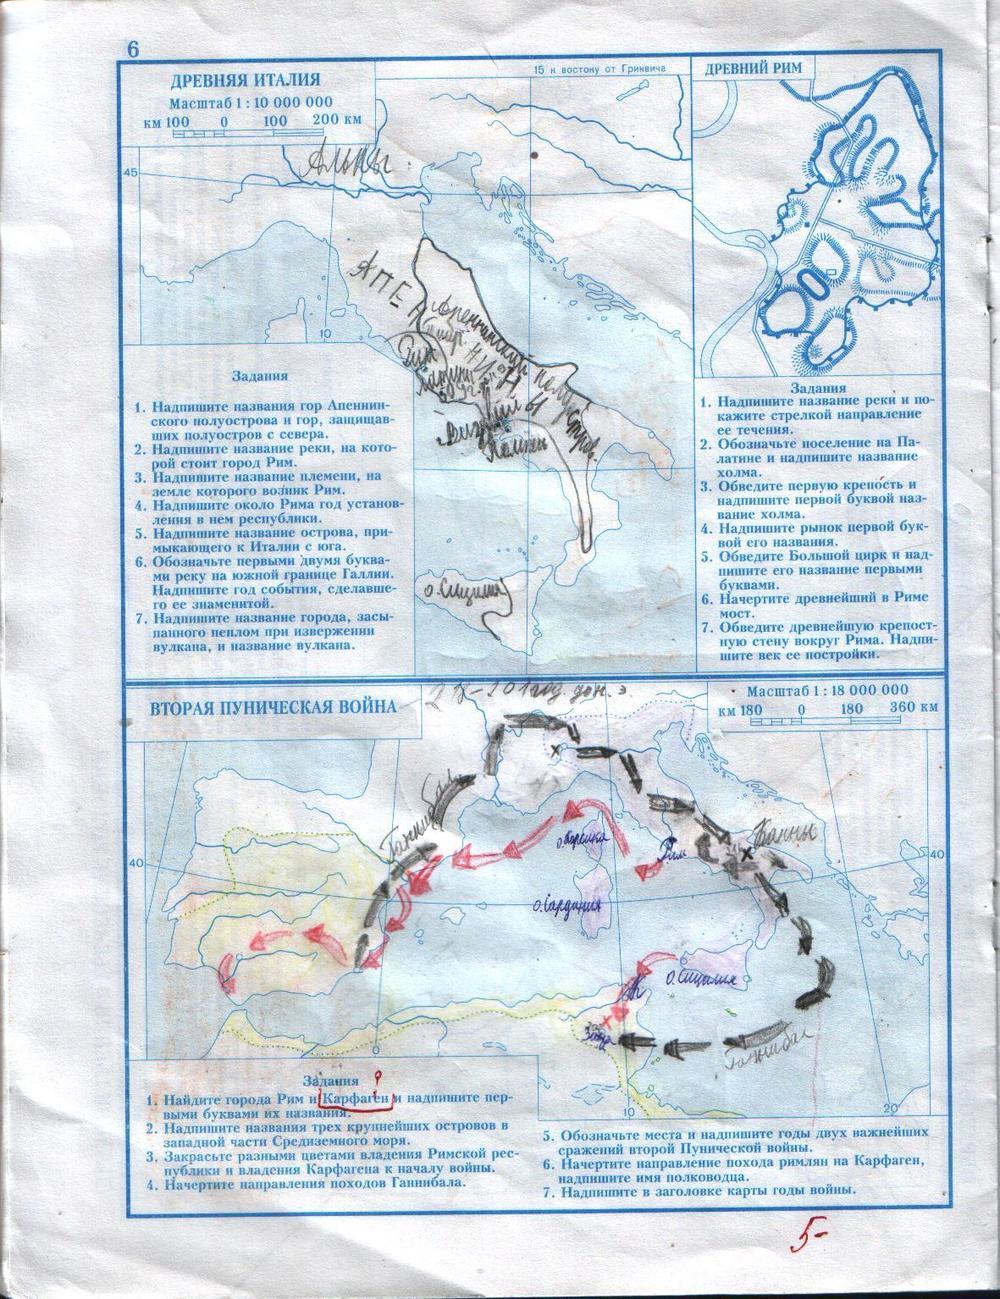 Напишите название гор апеннинского полуострова и гор защищавших полуостров с севера контурная карта